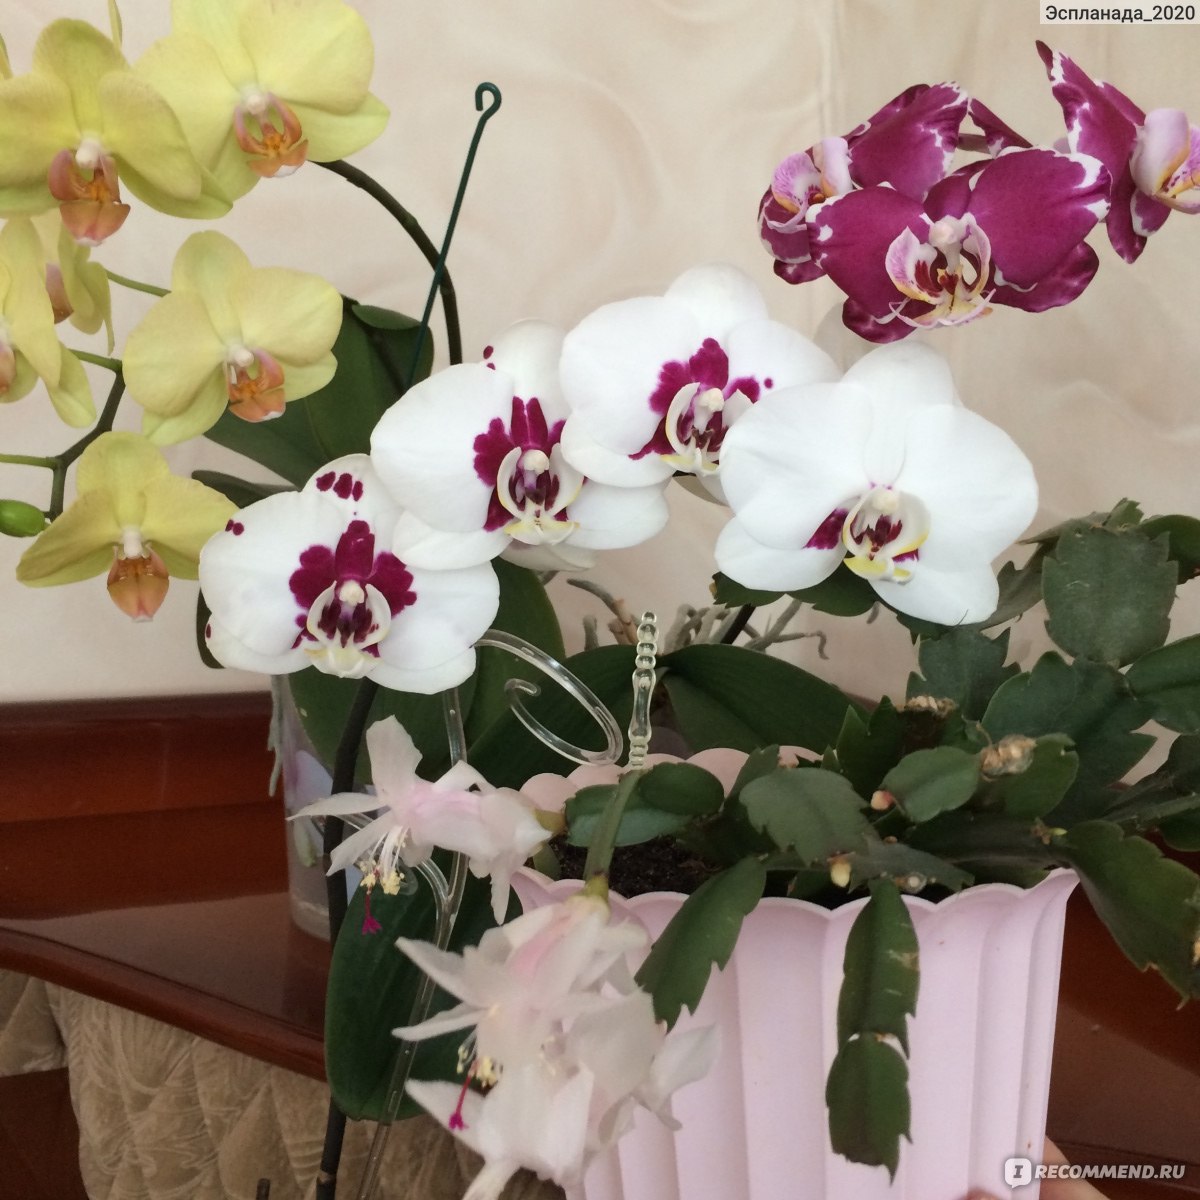 Субстрат и кора для орхидей